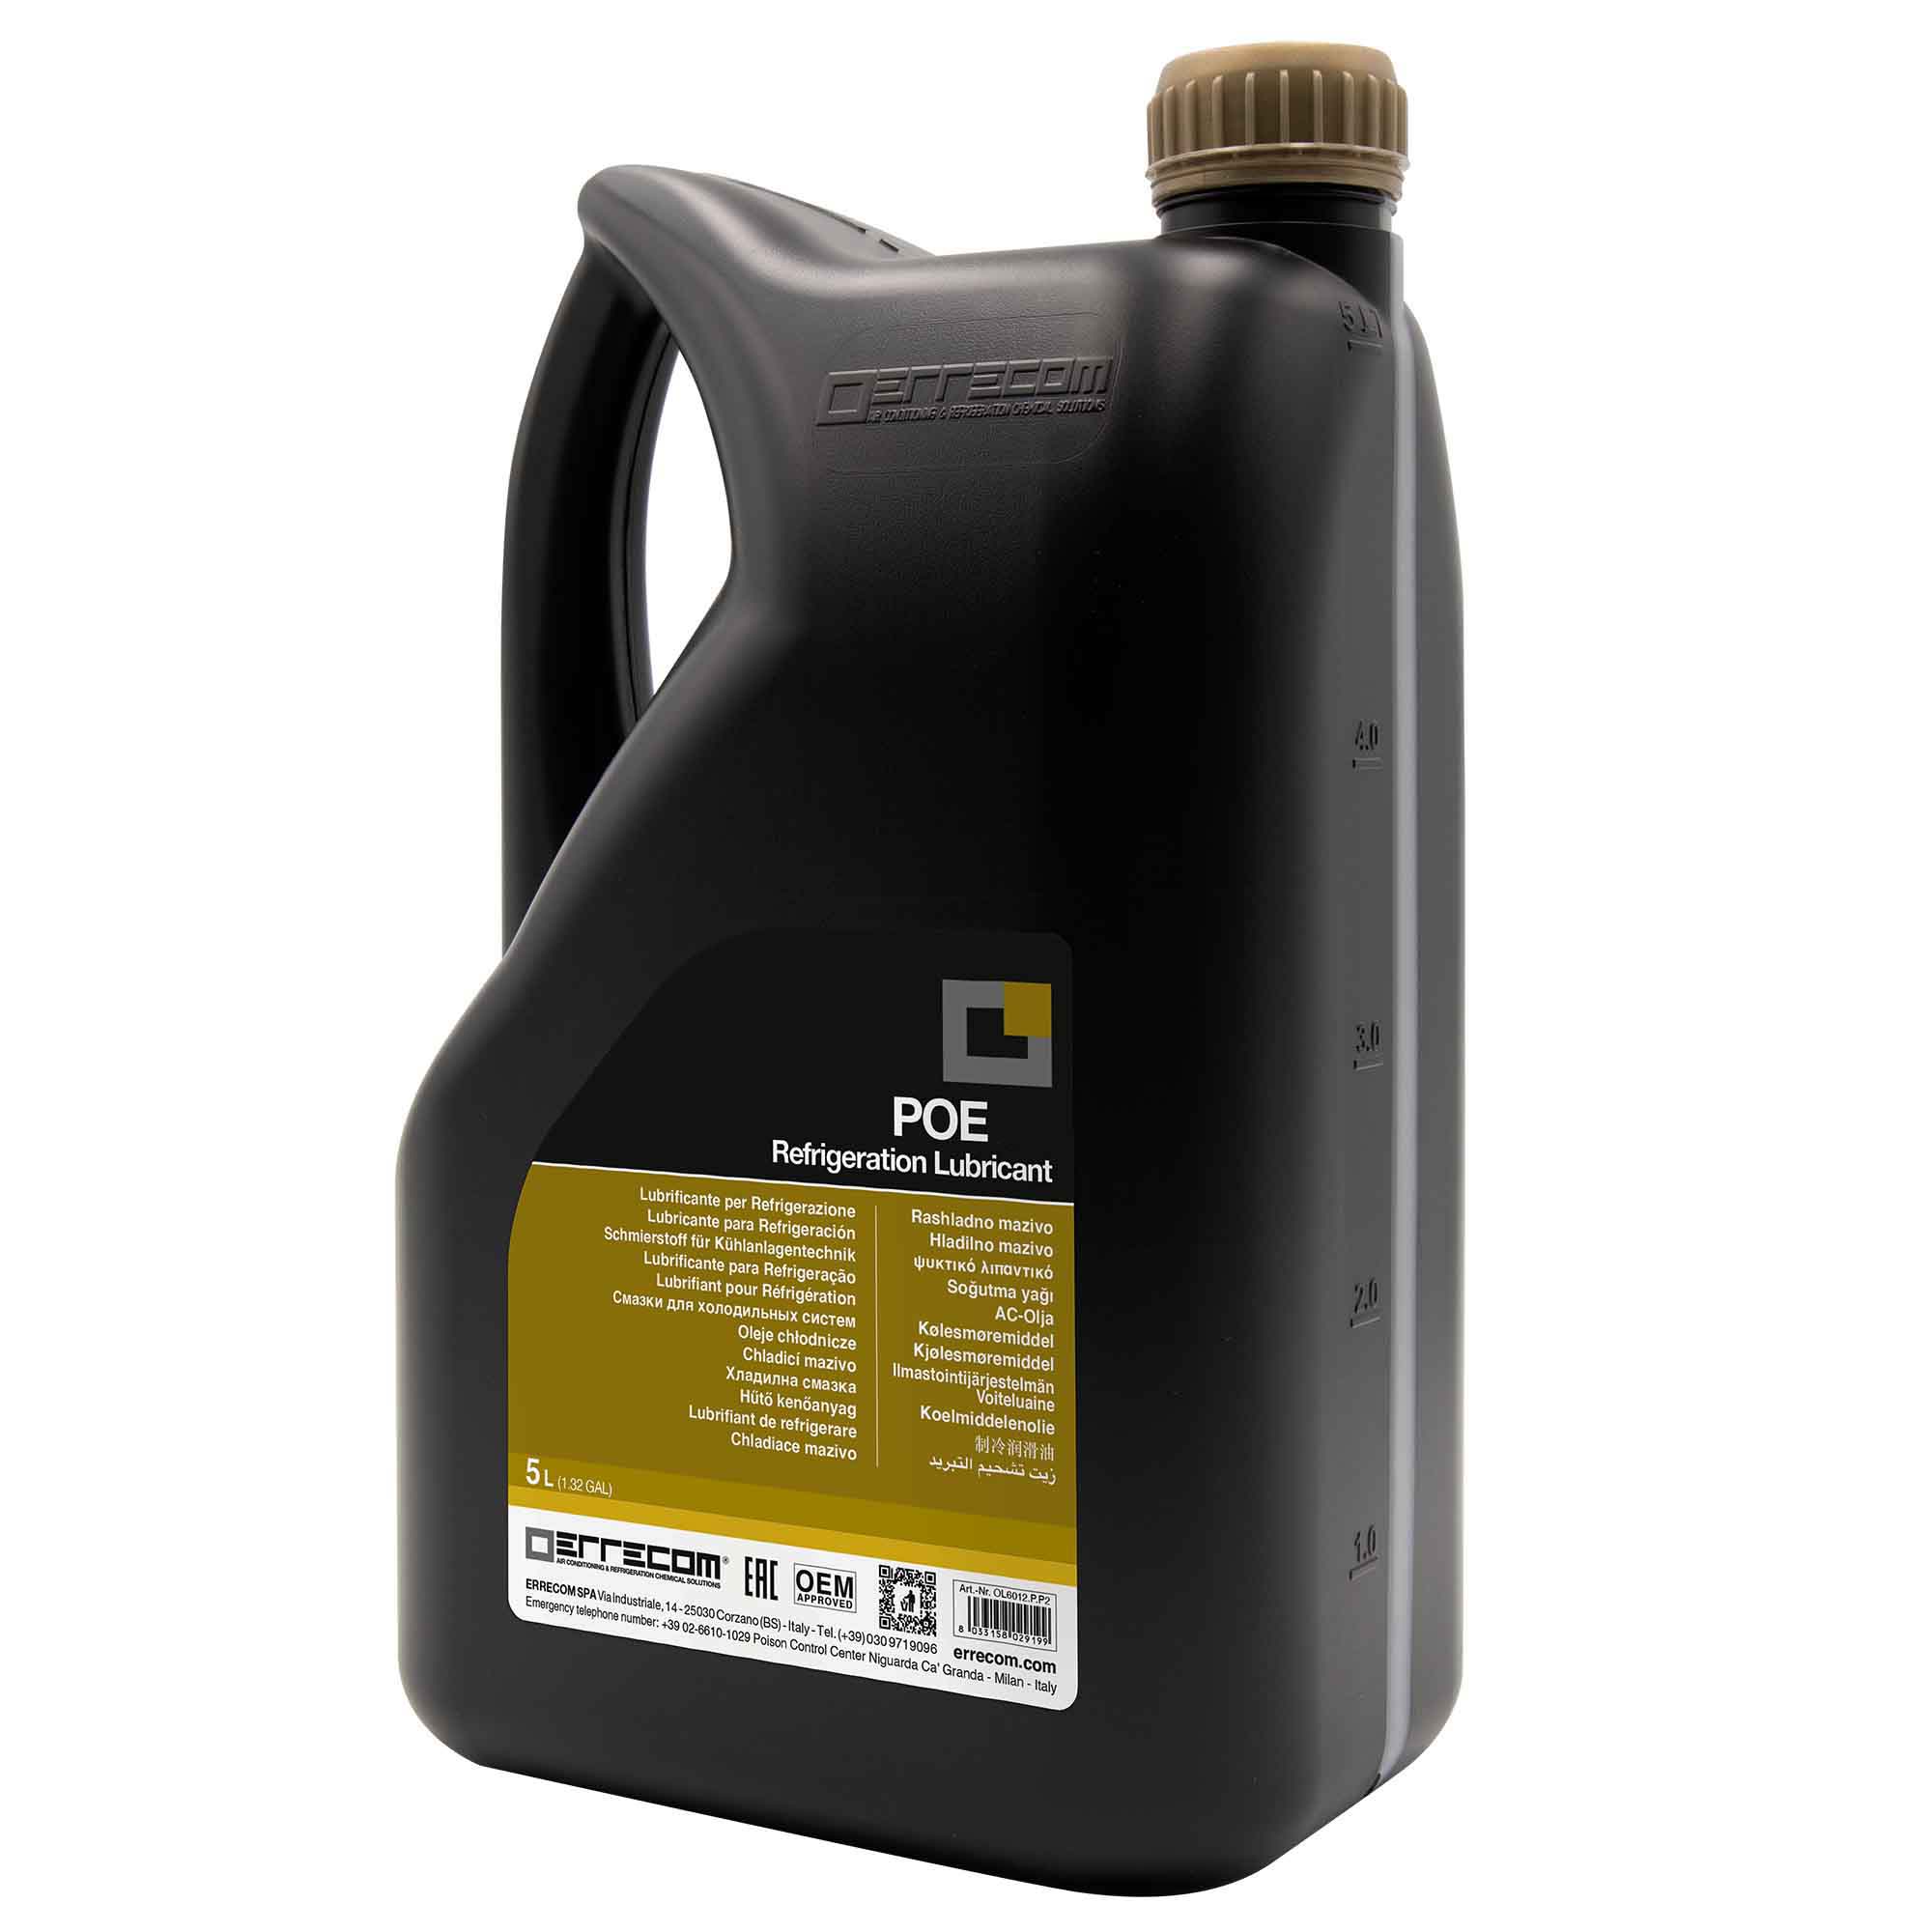 2 x Olio lubrificante R&AC Polyol Estere (POE) Errecom 55 - Tanica in Plastica da 5 lt. - Confezione n° 2 pz. (totale 10 litri) - Foto 1 